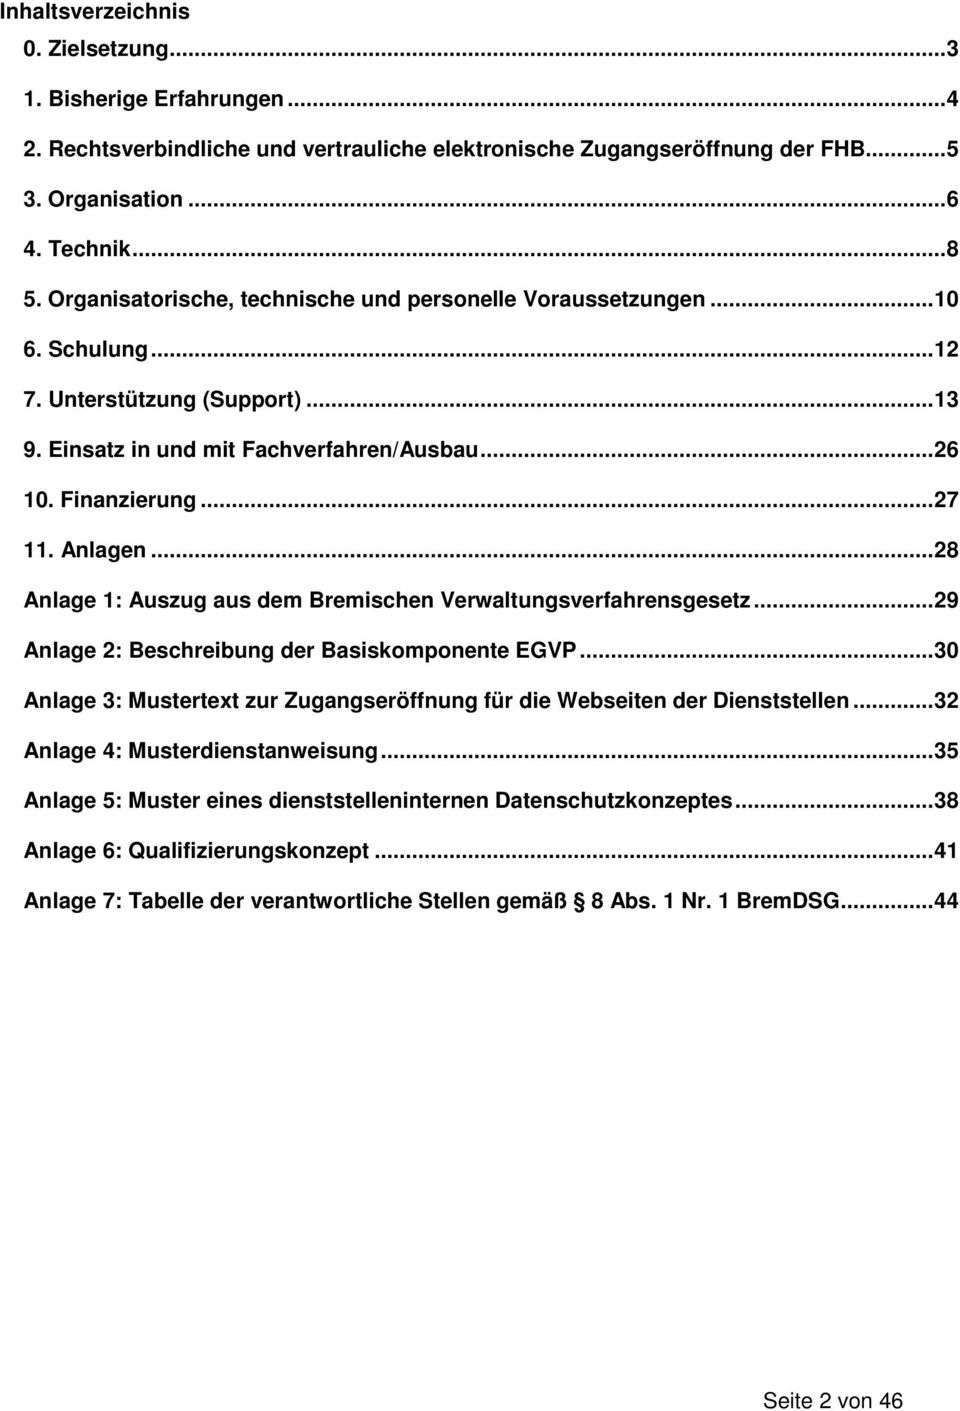 Anlagen... 28 Anlage 1: Auszug aus dem Bremischen Verwaltungsverfahrensgesetz... 29 Anlage 2: Beschreibung der Basiskomponente EGVP.